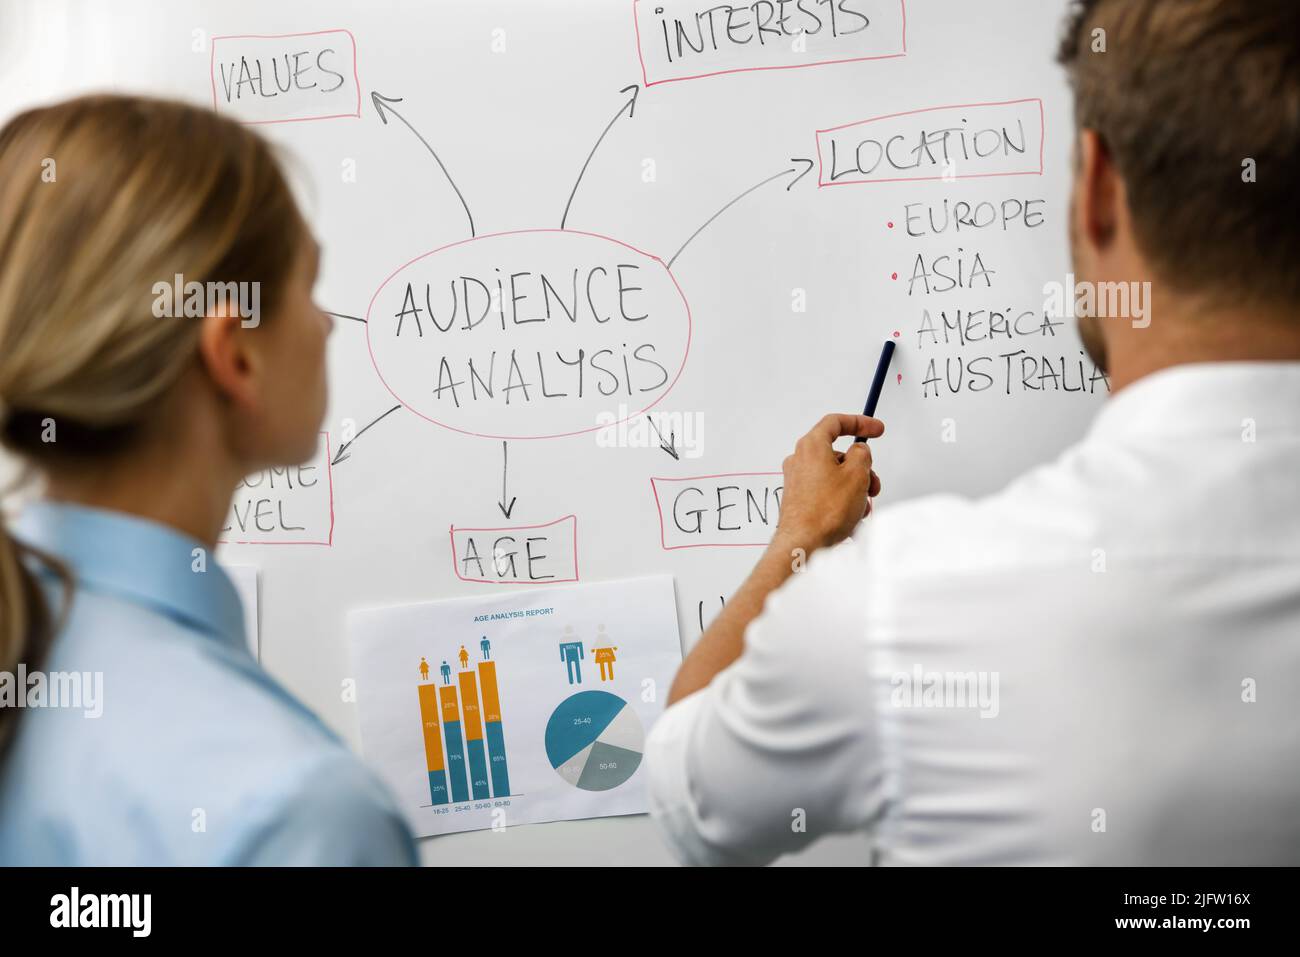 análisis del público objetivo, segmentación del mercado: personal de marketing que analiza los datos de los clientes empresariales en una pizarra Foto de stock